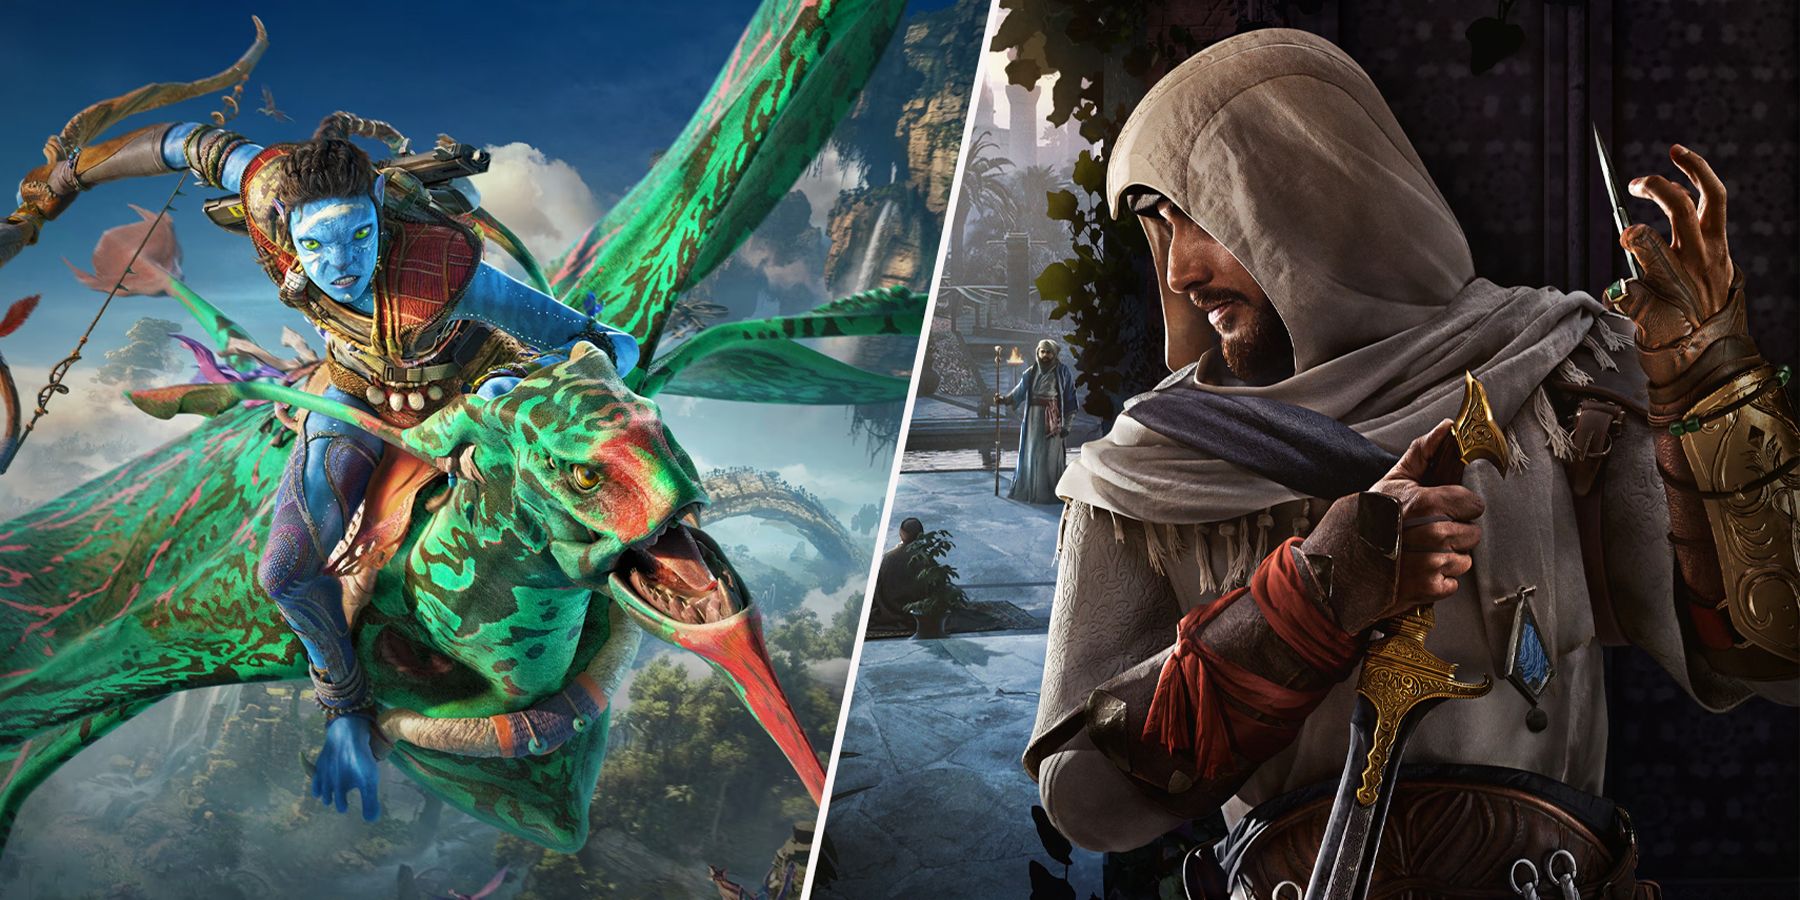 Ubisoft lançará 11 jogos entre abril de 2023 e março de 2024 [RUMOR]